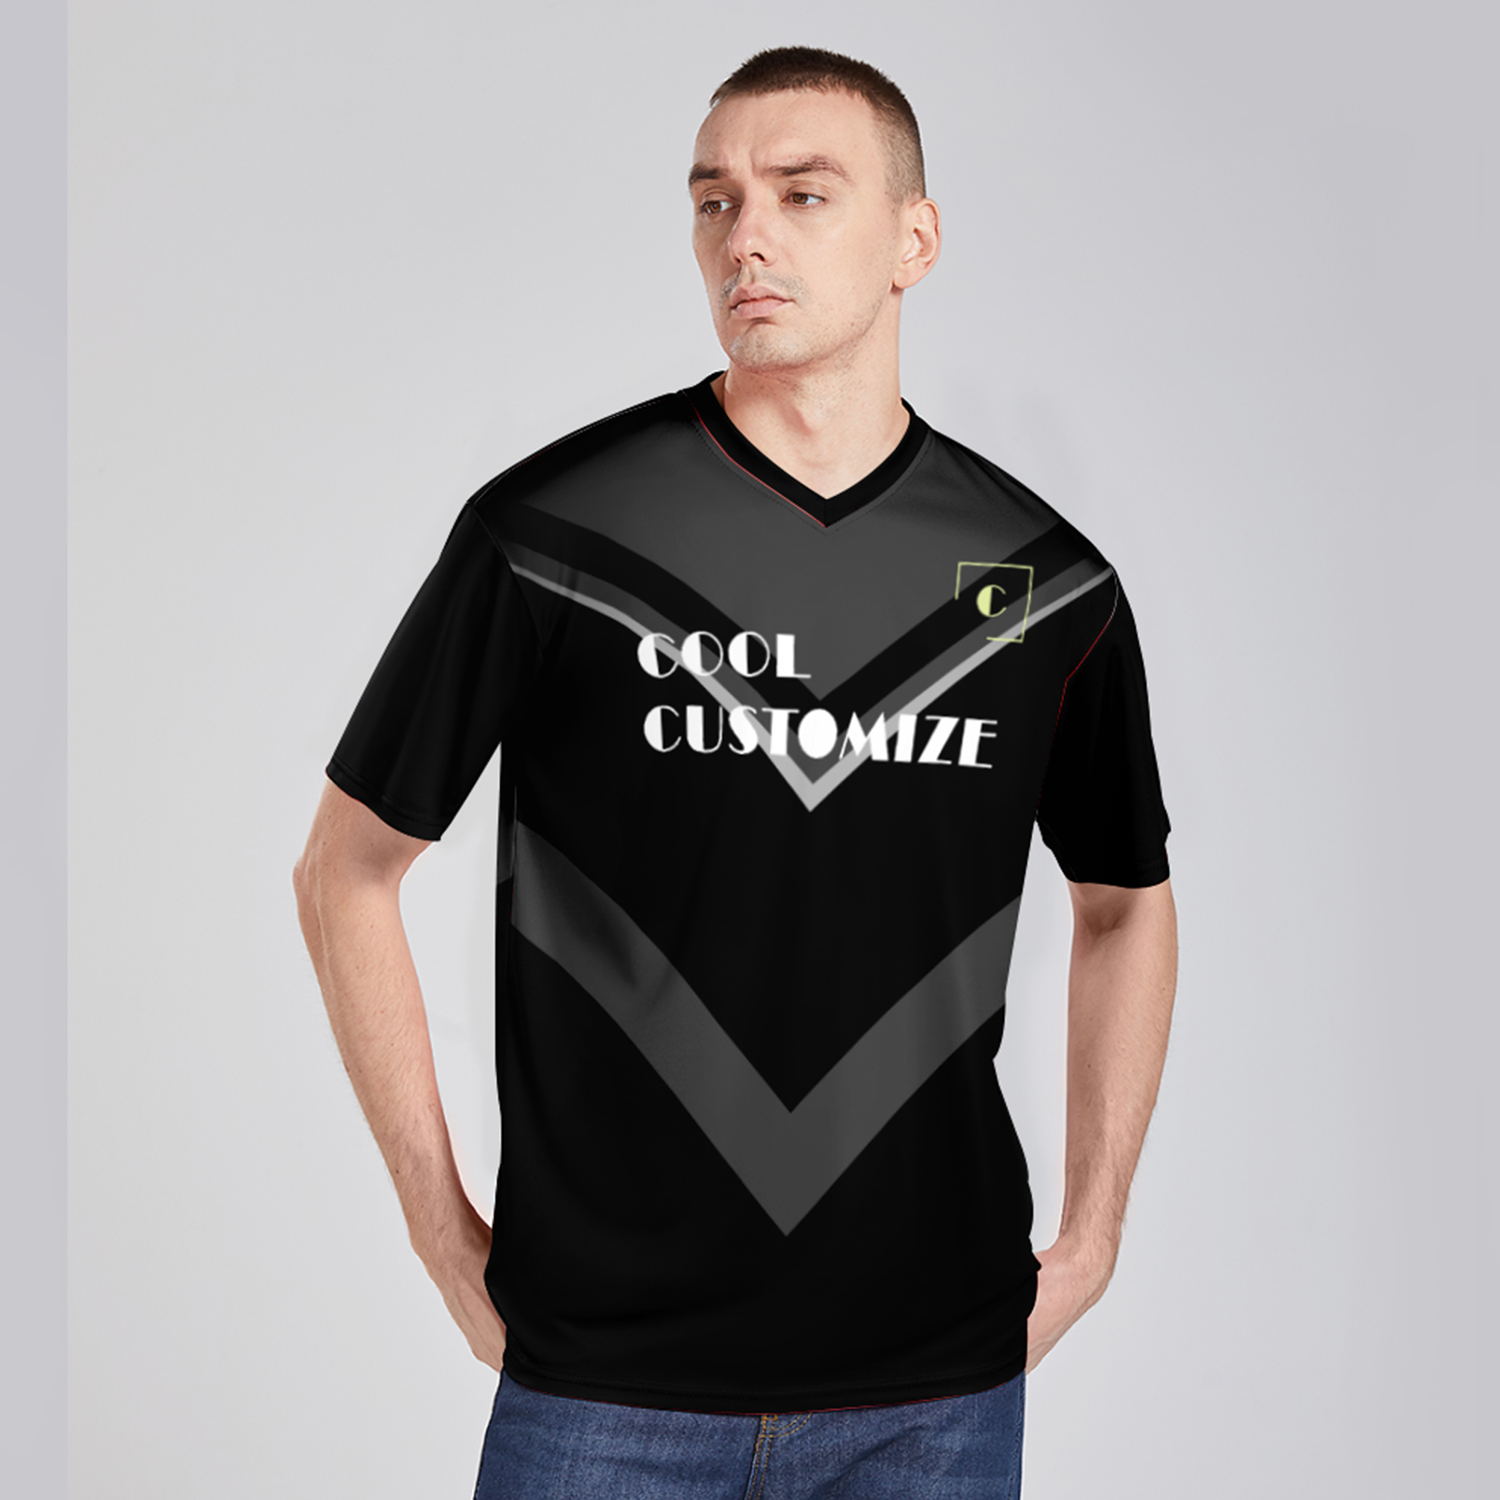 Factory Wholesale Customized OEM Full Printing Athletic Short Sleeve T-shirt Unisex